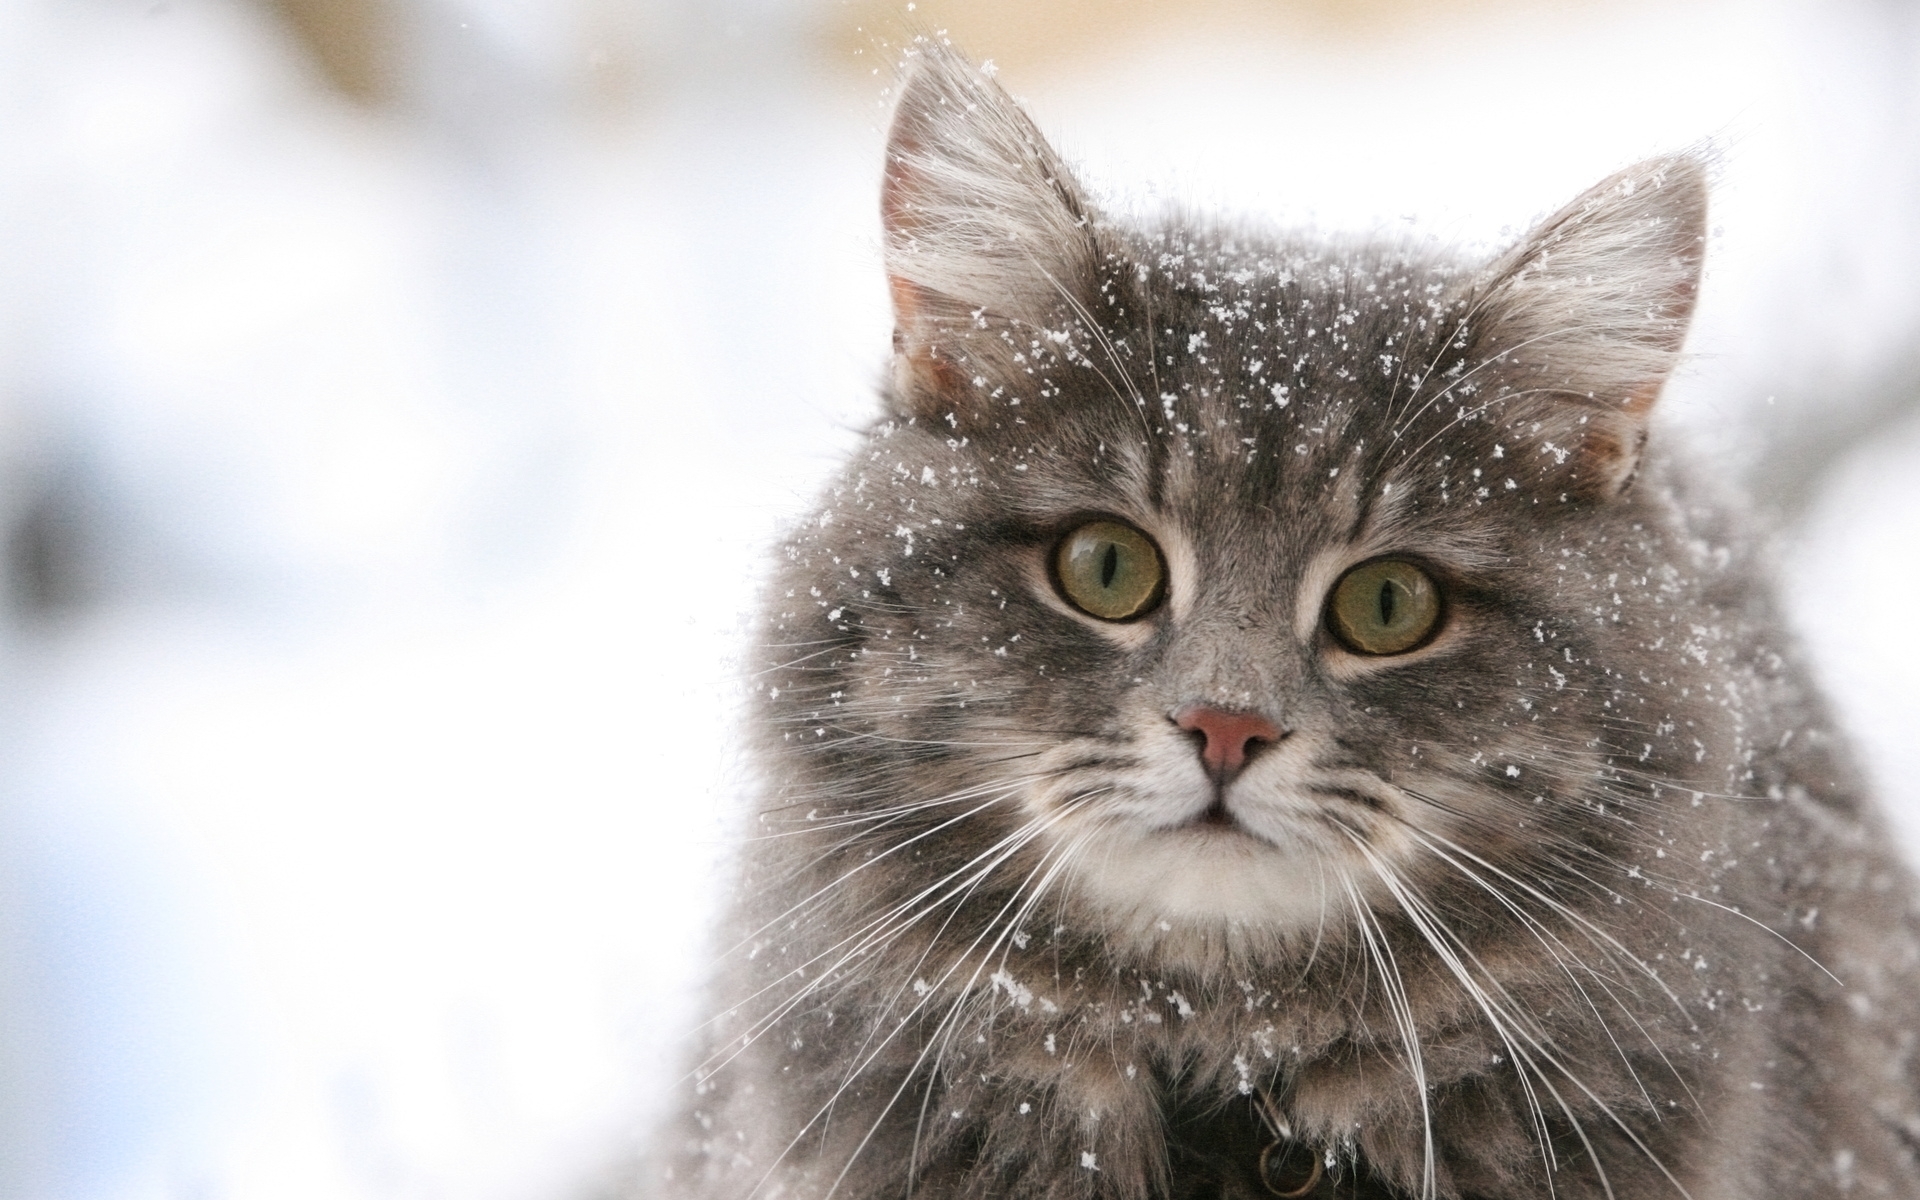 Скачать обои бесплатно Снег, Животные, Кошки (Коты Котики) картинка на рабочий стол ПК